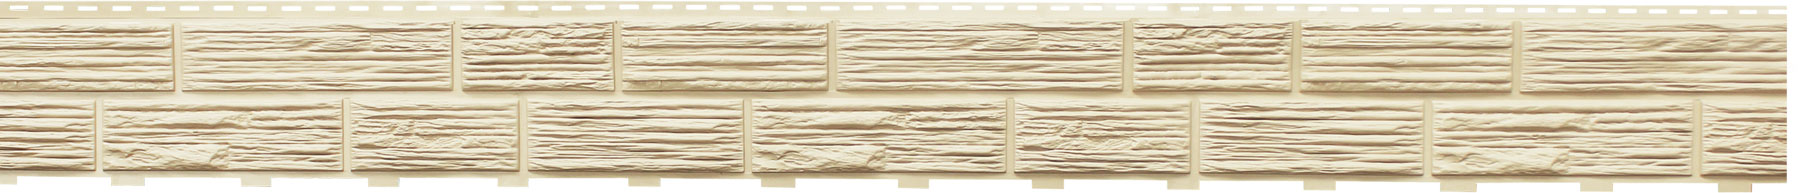 Сайдинг Доломит цокольный, серия "Альпийский" Слоновая кость, общий вид